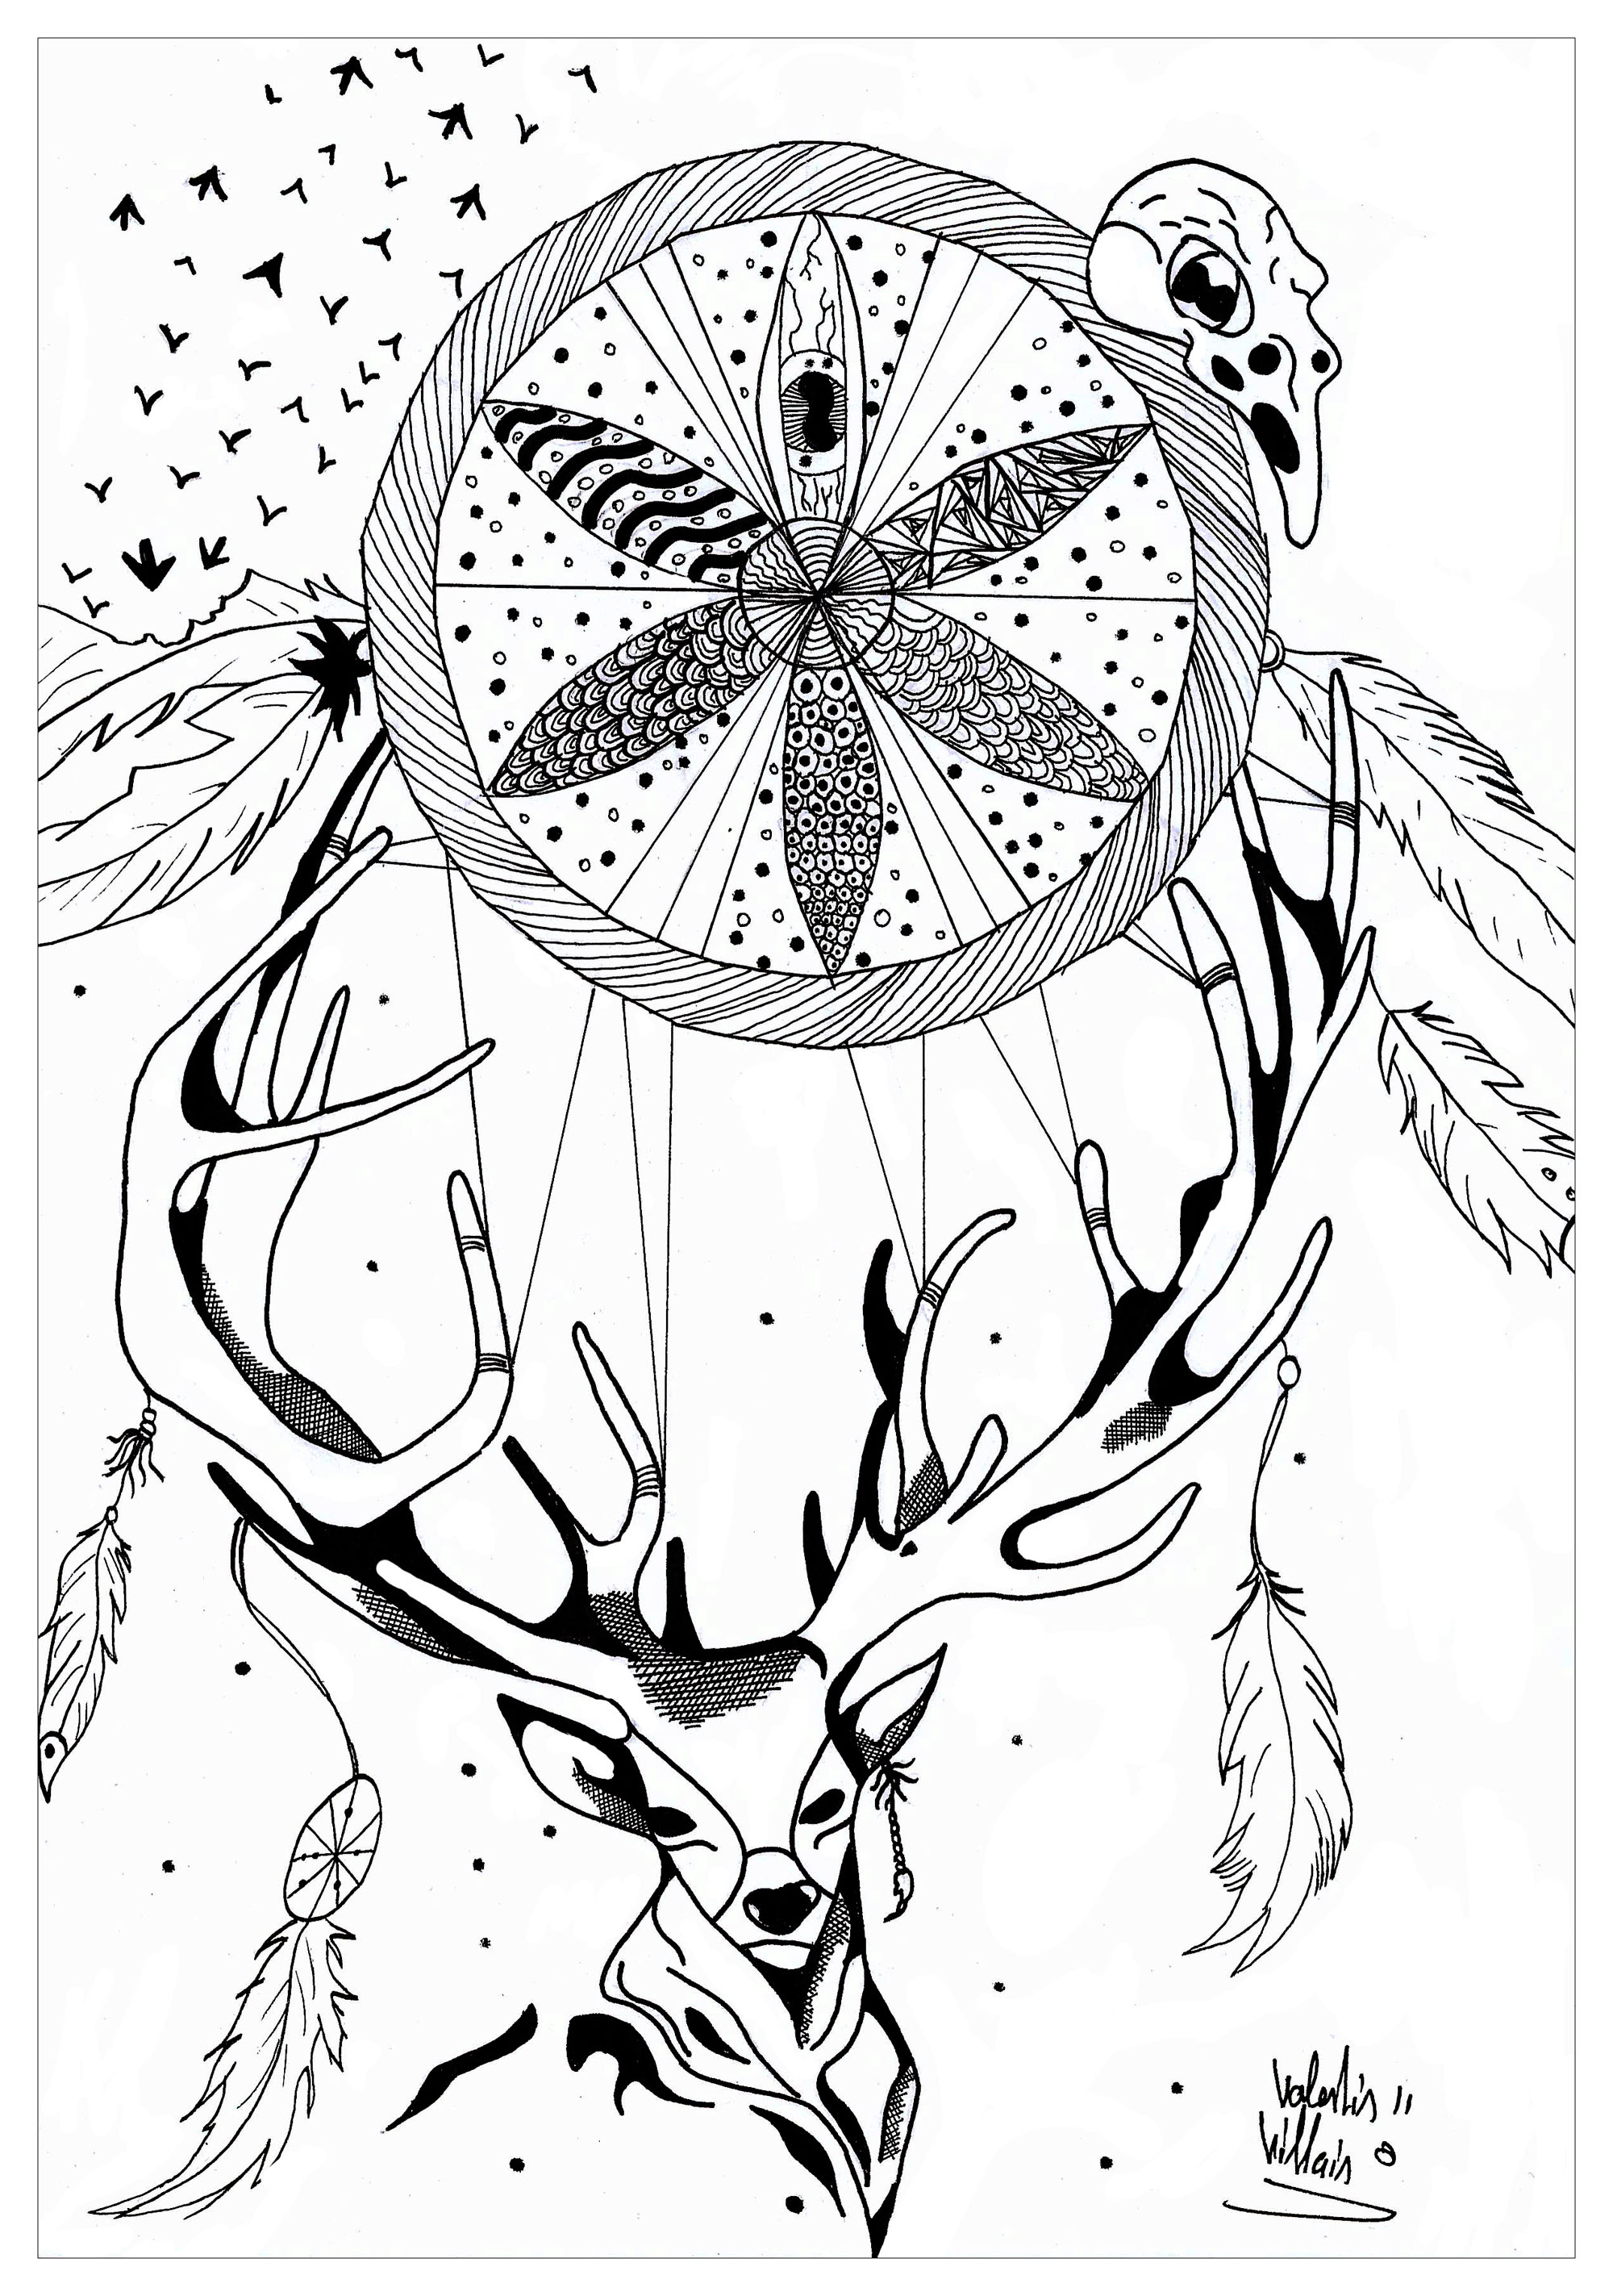 Pagina da colorare di un cervo con un acchiappasogni. Questo disegno originale rappresenta un cervo con bellissime corna che sostiene un incredibile acchiappasogni.